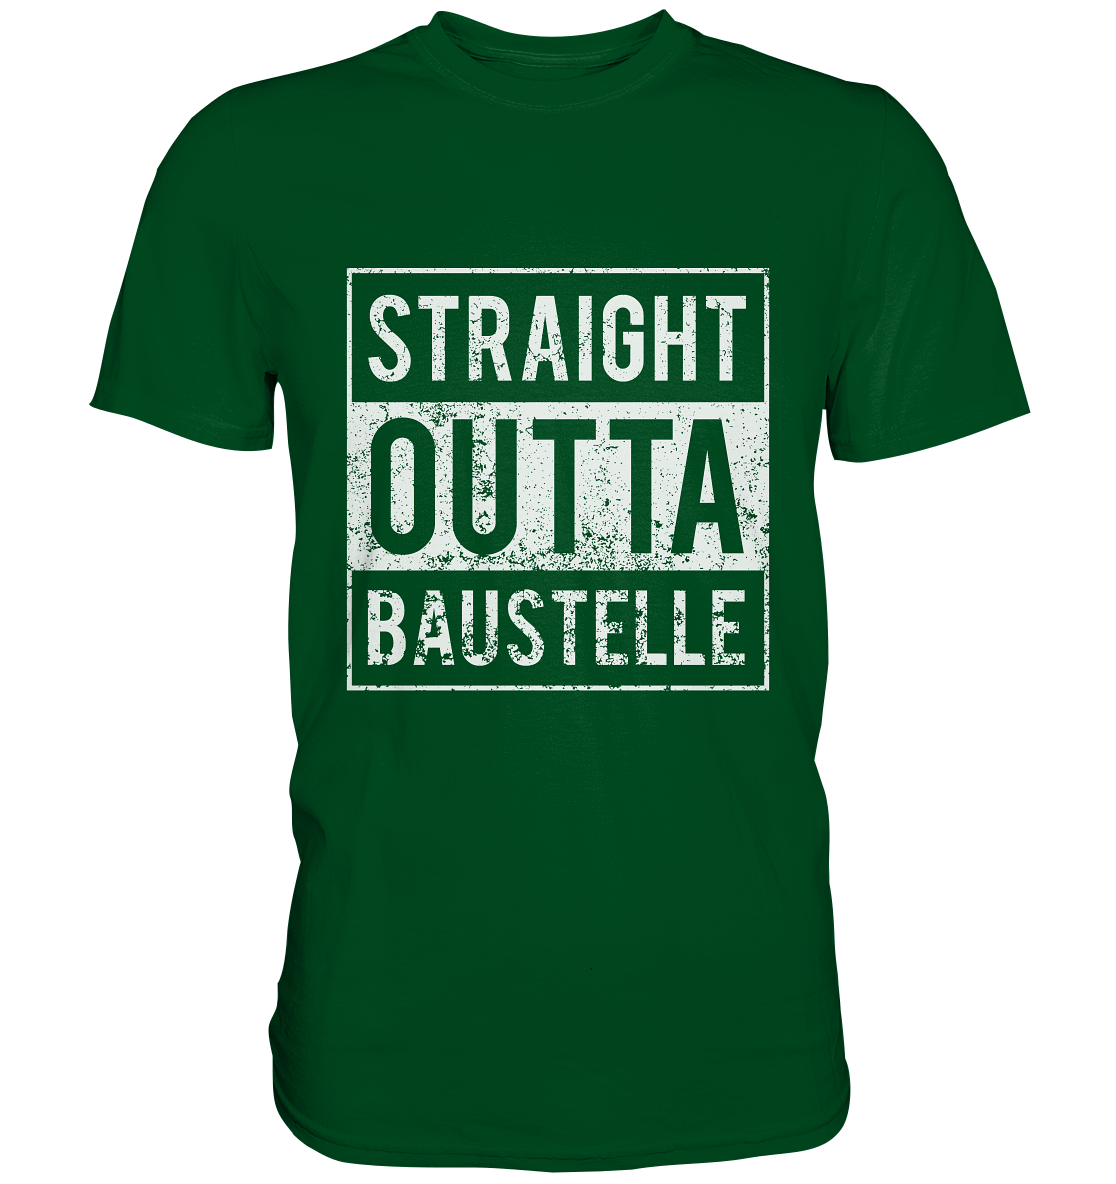 Straight outta Baustelle / Männer Premium T-Shirt / Druck weiß Premium Shirt - Baufun Shop